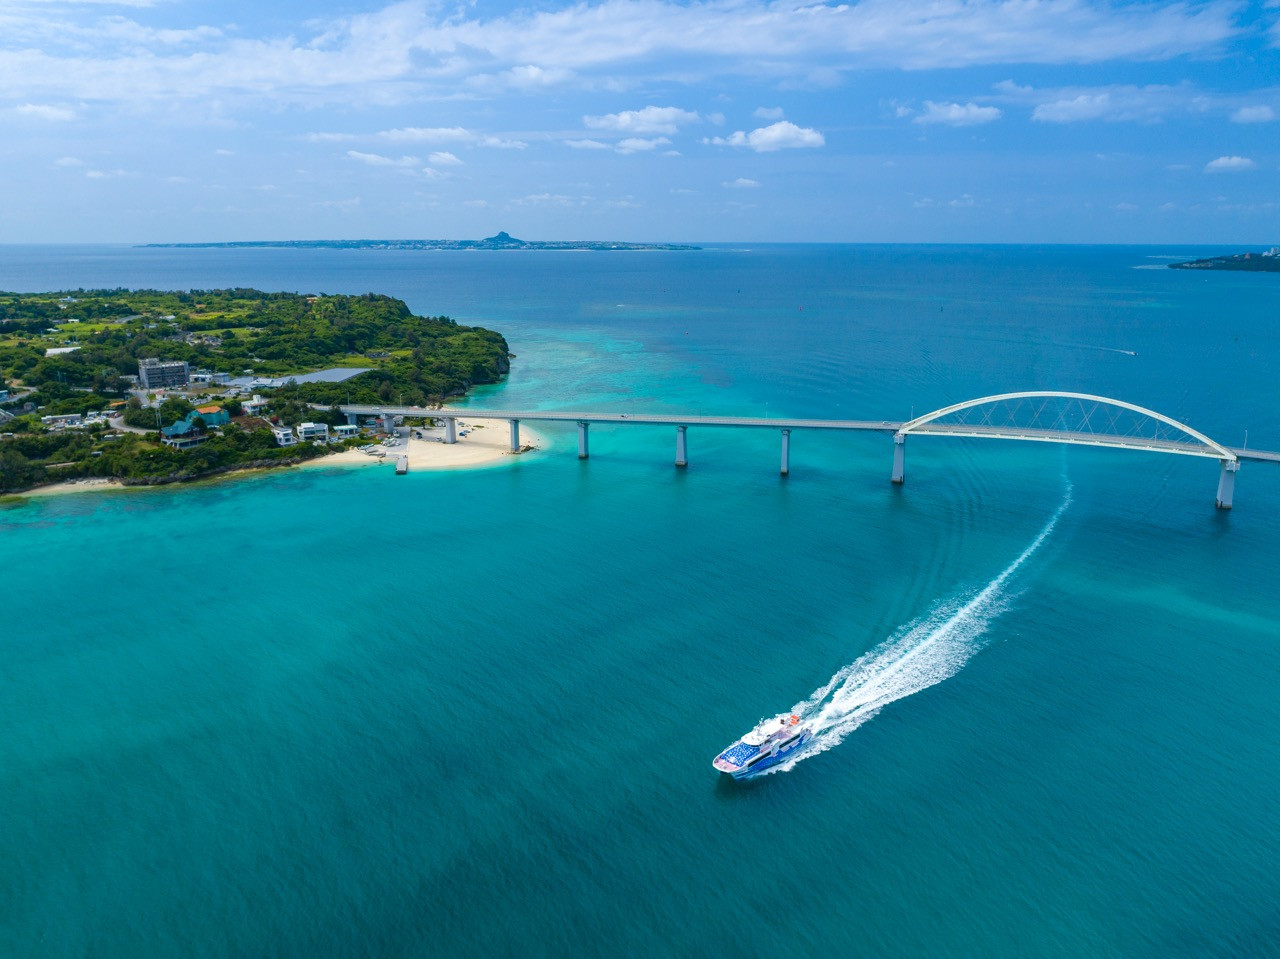 高速船で沖縄北部まで 海 からアクセスする方法 沖縄観光情報webサイト おきなわ物語